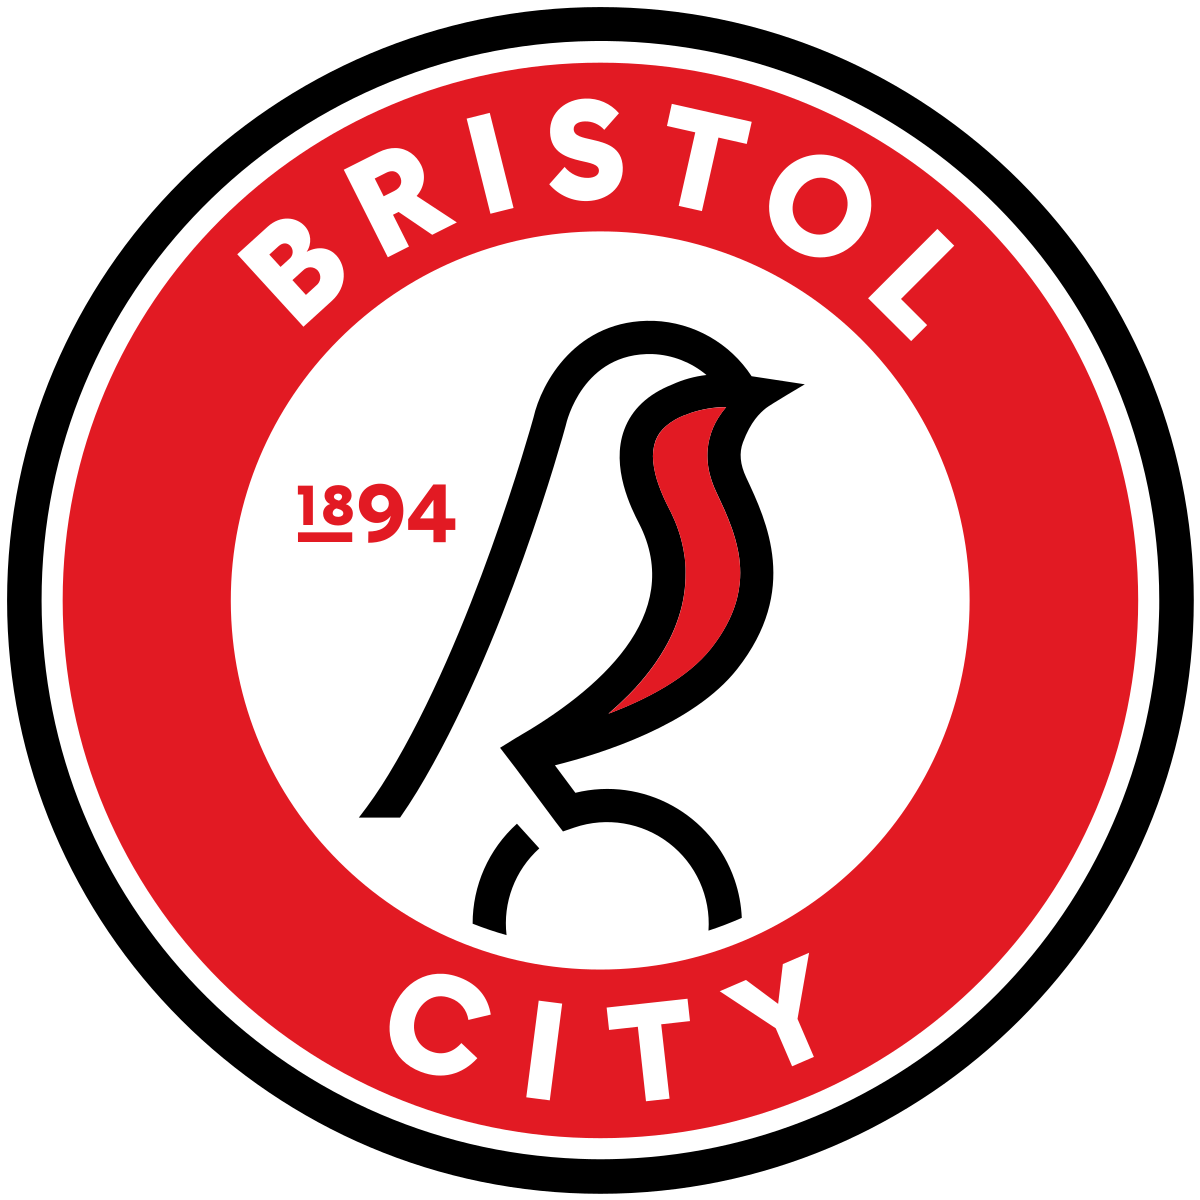 Bristol City v West Bromwich Albion - Hospitality